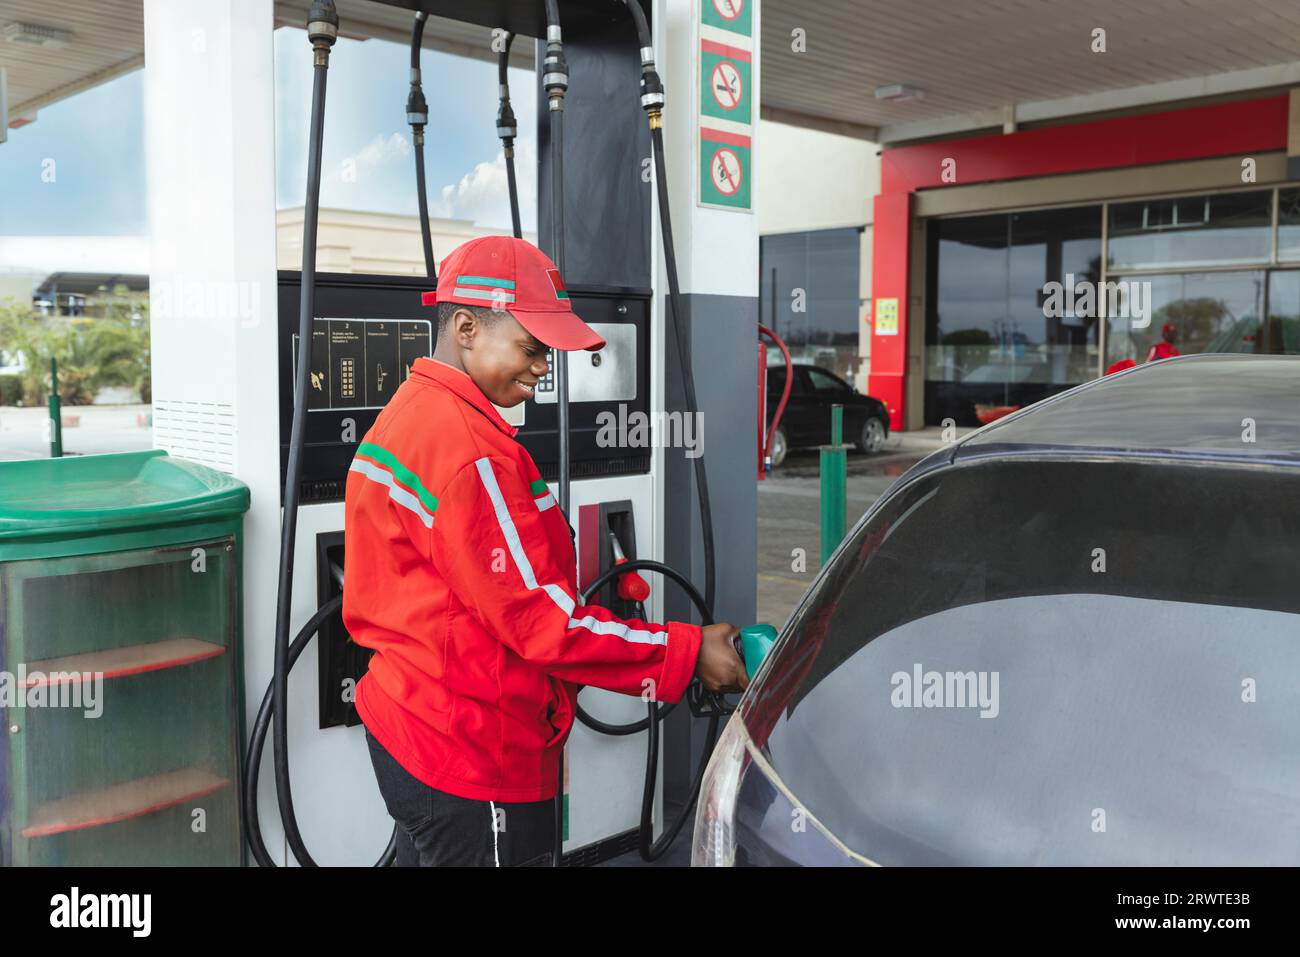 assistente donna afroamericana in uniforme rossa alla pompa del gas, riempiendo con benzina una piccola auto, ugello è nel serbatoio Foto Stock